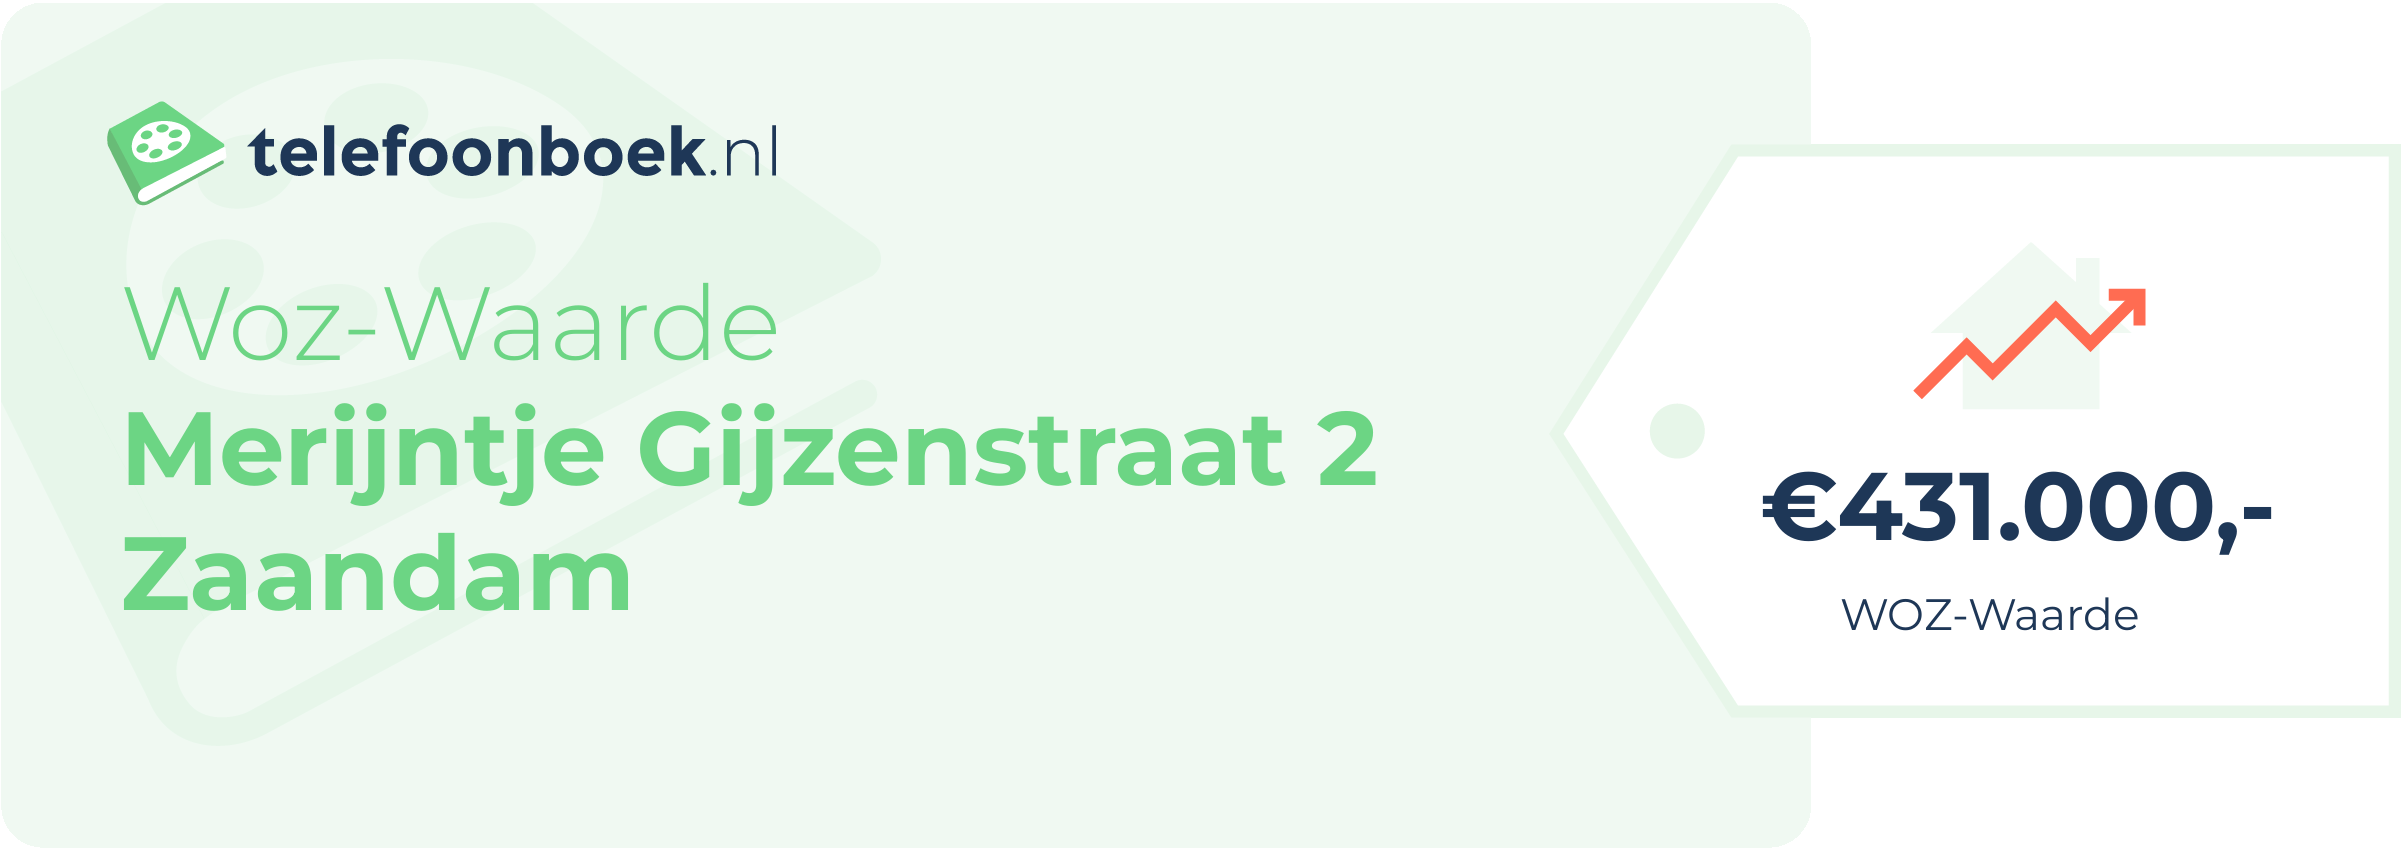 WOZ-waarde Merijntje Gijzenstraat 2 Zaandam